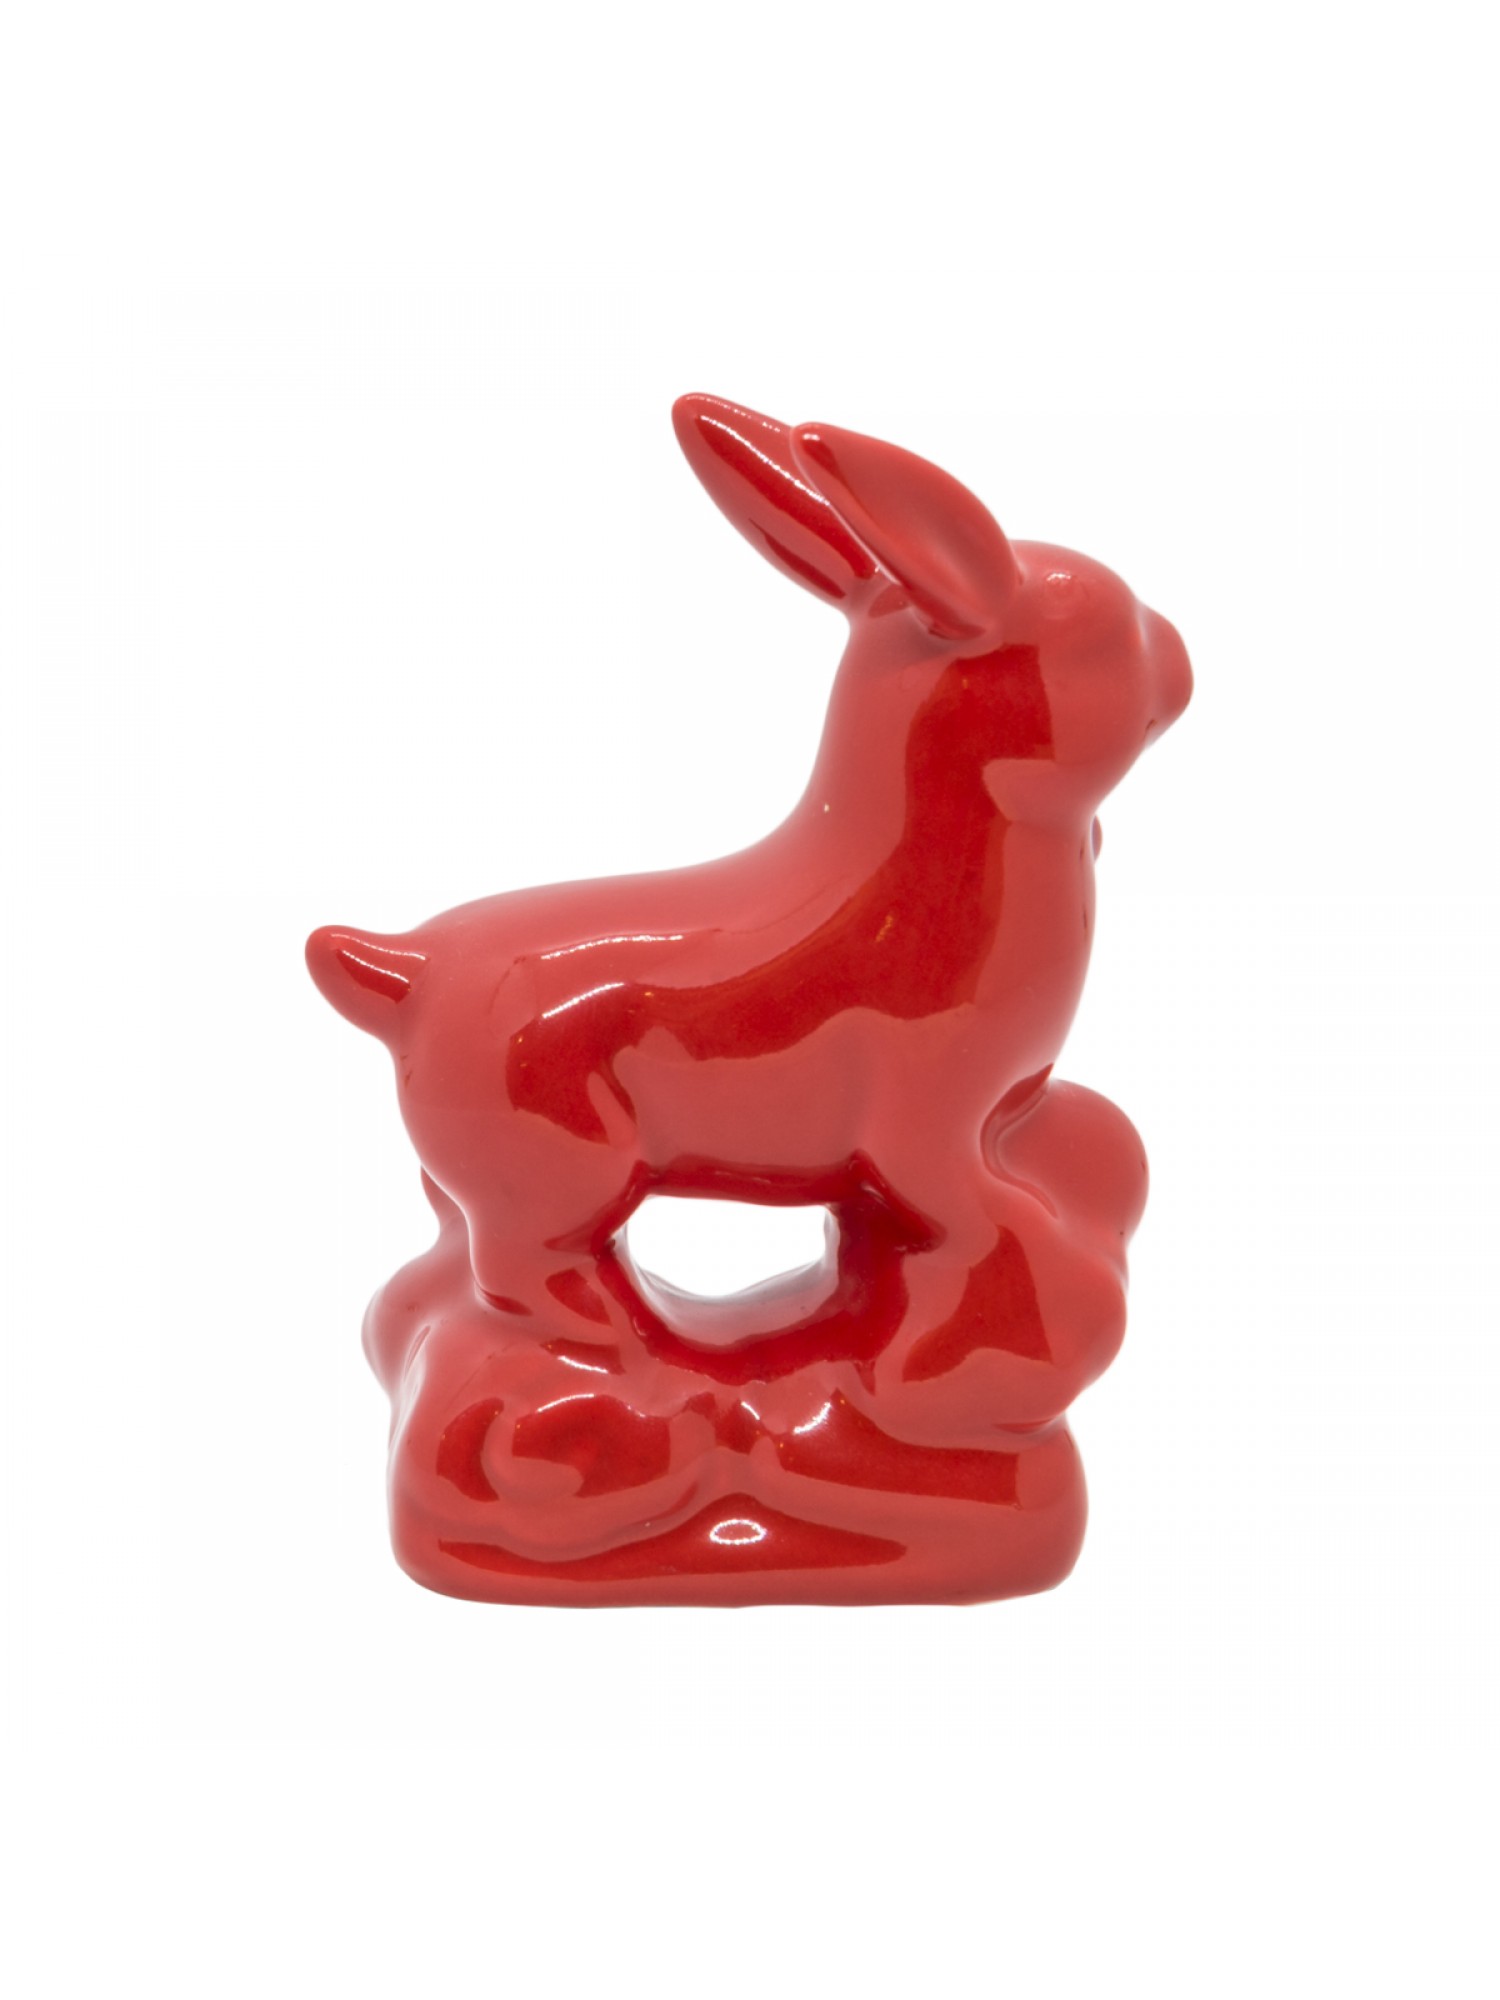 Статуэтка "Кролик" из фарфора (красный)  - символ 2023 года, улучшает семейную жизнь!